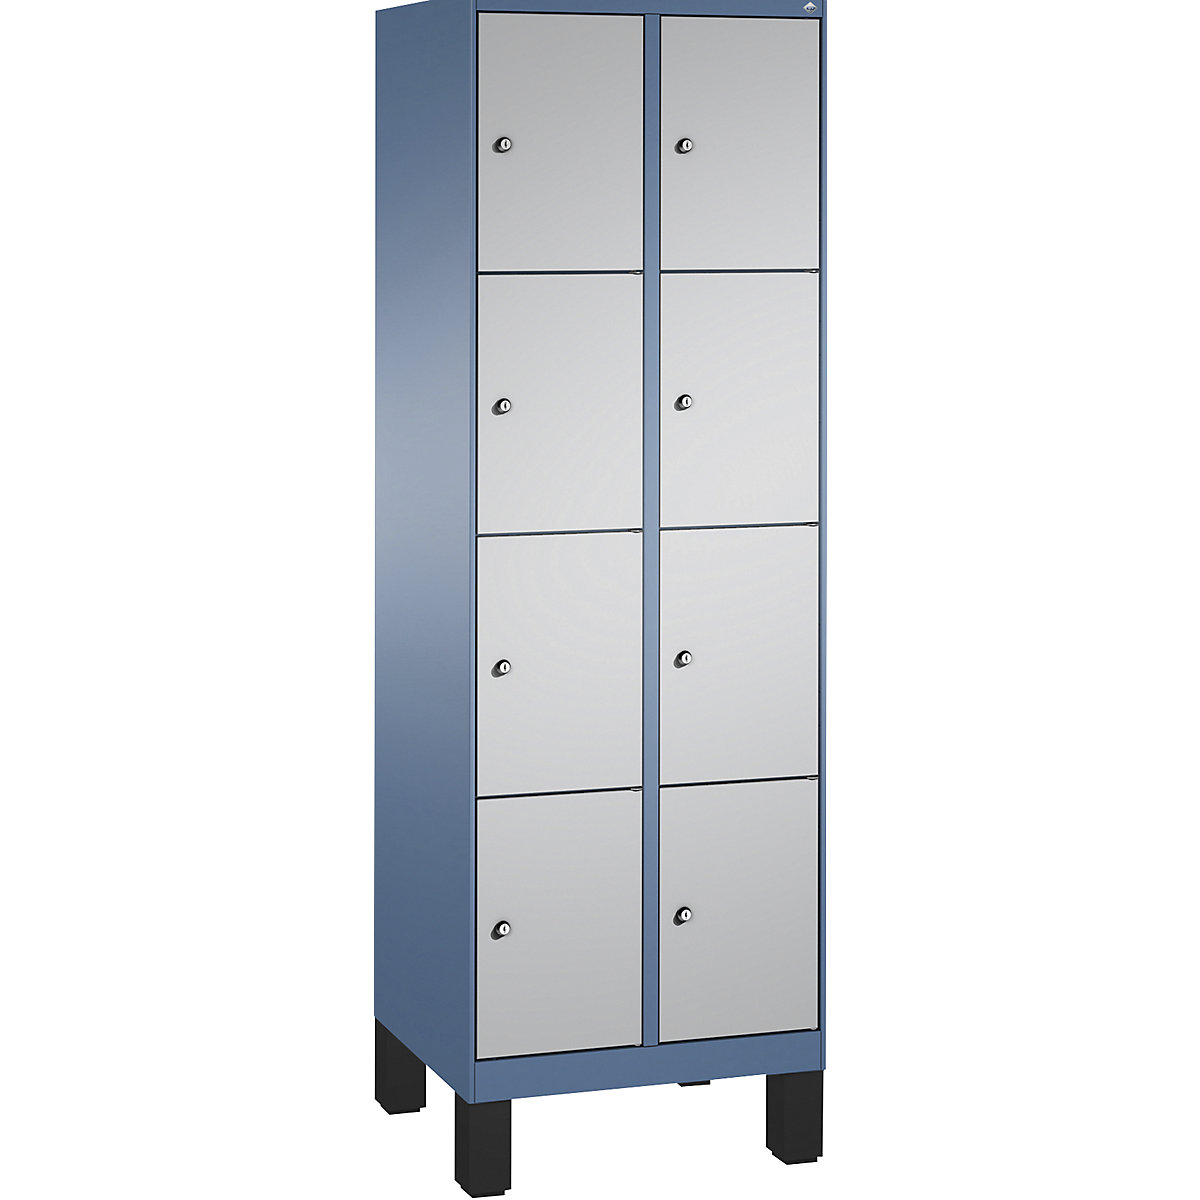 Armoire à casiers sur pieds EVOLO – C+P, 2 compartiments, 4 casiers chacun, largeur compartiments 300 mm, bleu distant / aluminium-5